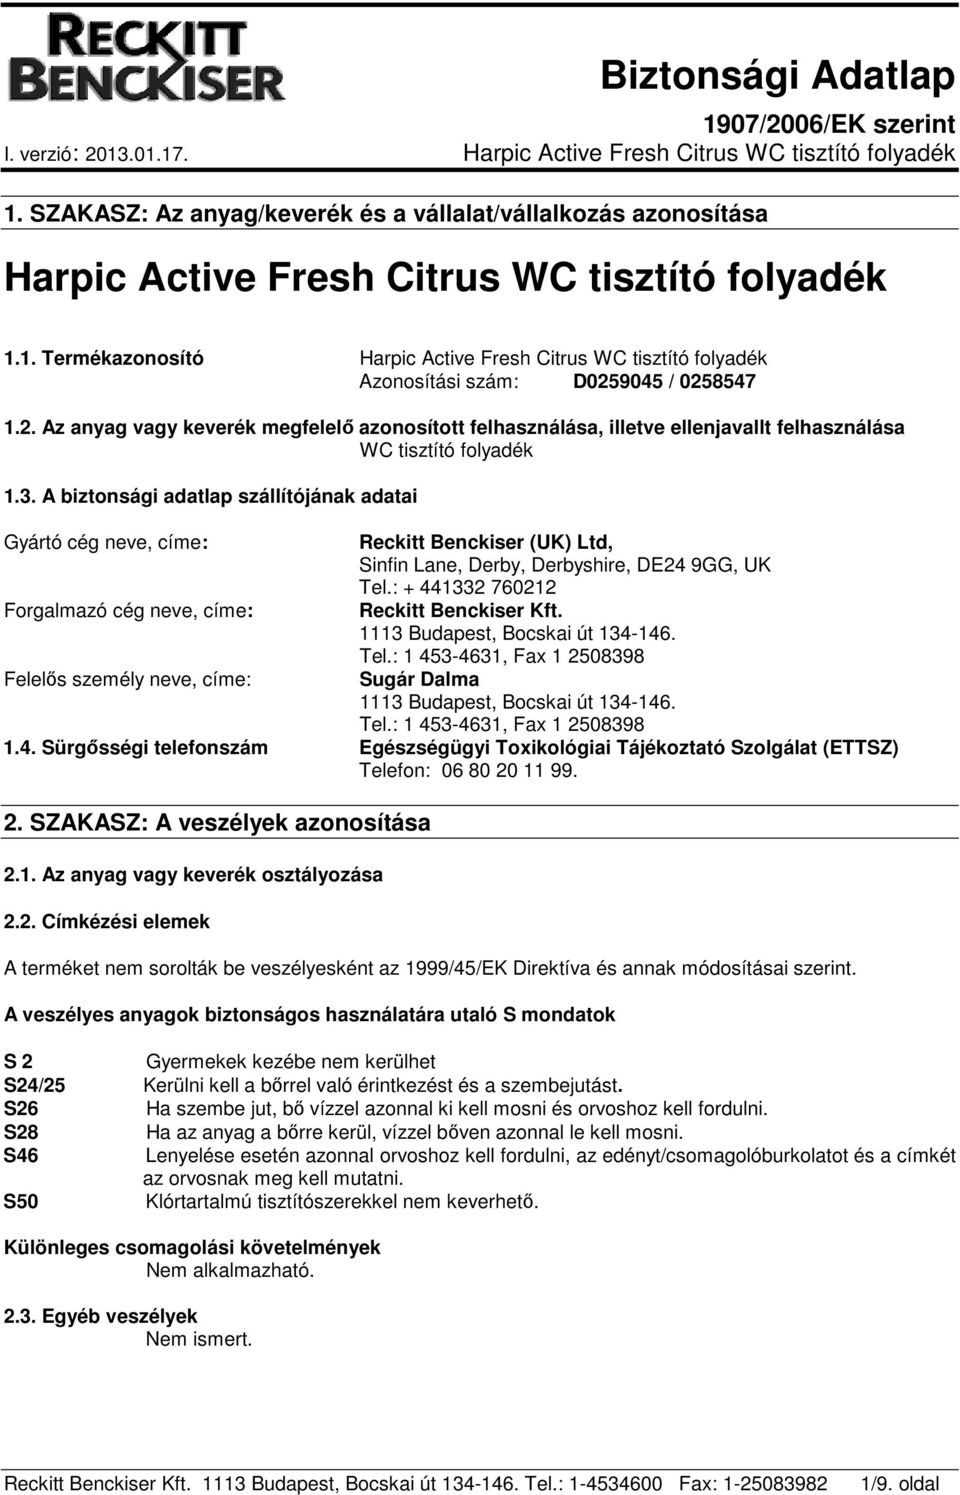 Harpic Active Fresh Citrus WC tisztító folyadék - PDF Ingyenes letöltés